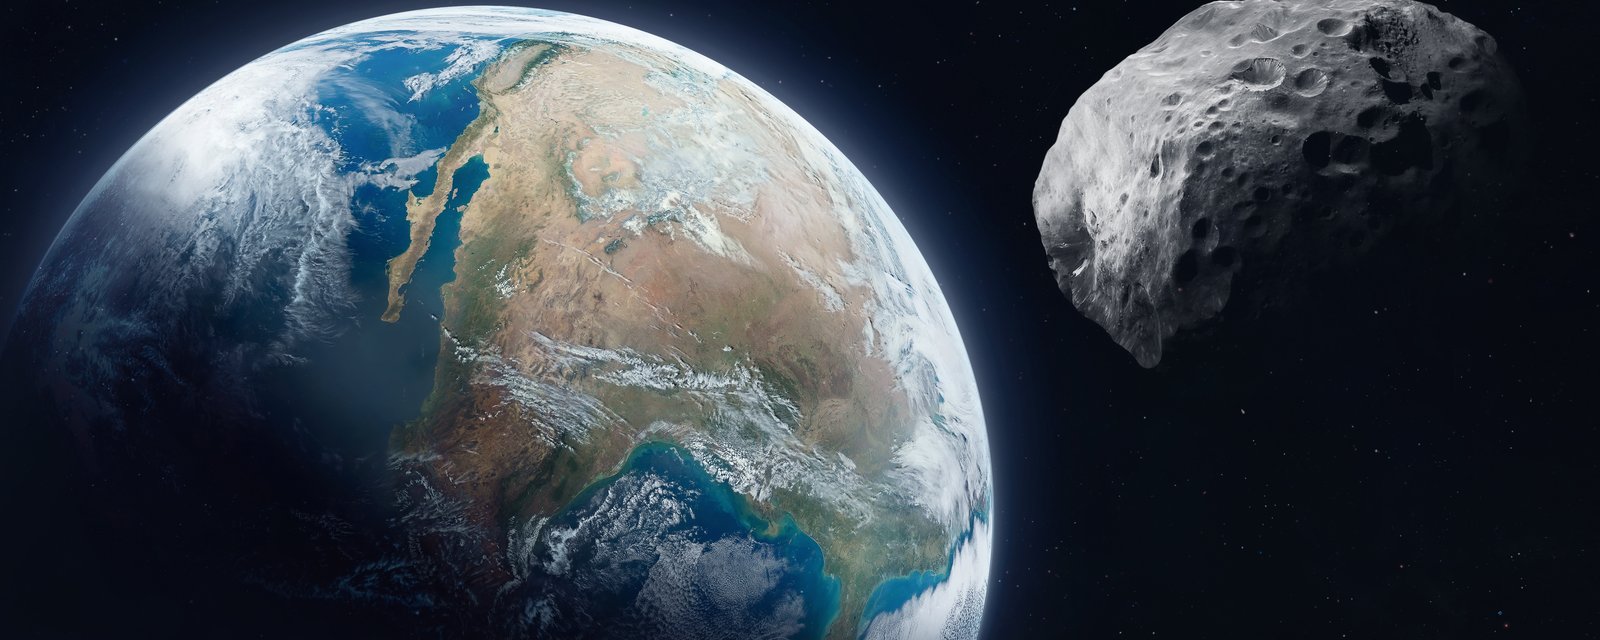 Un astéroïde de la grosseur d'un gratte-ciel va passer près de la Terre aujourd'hui